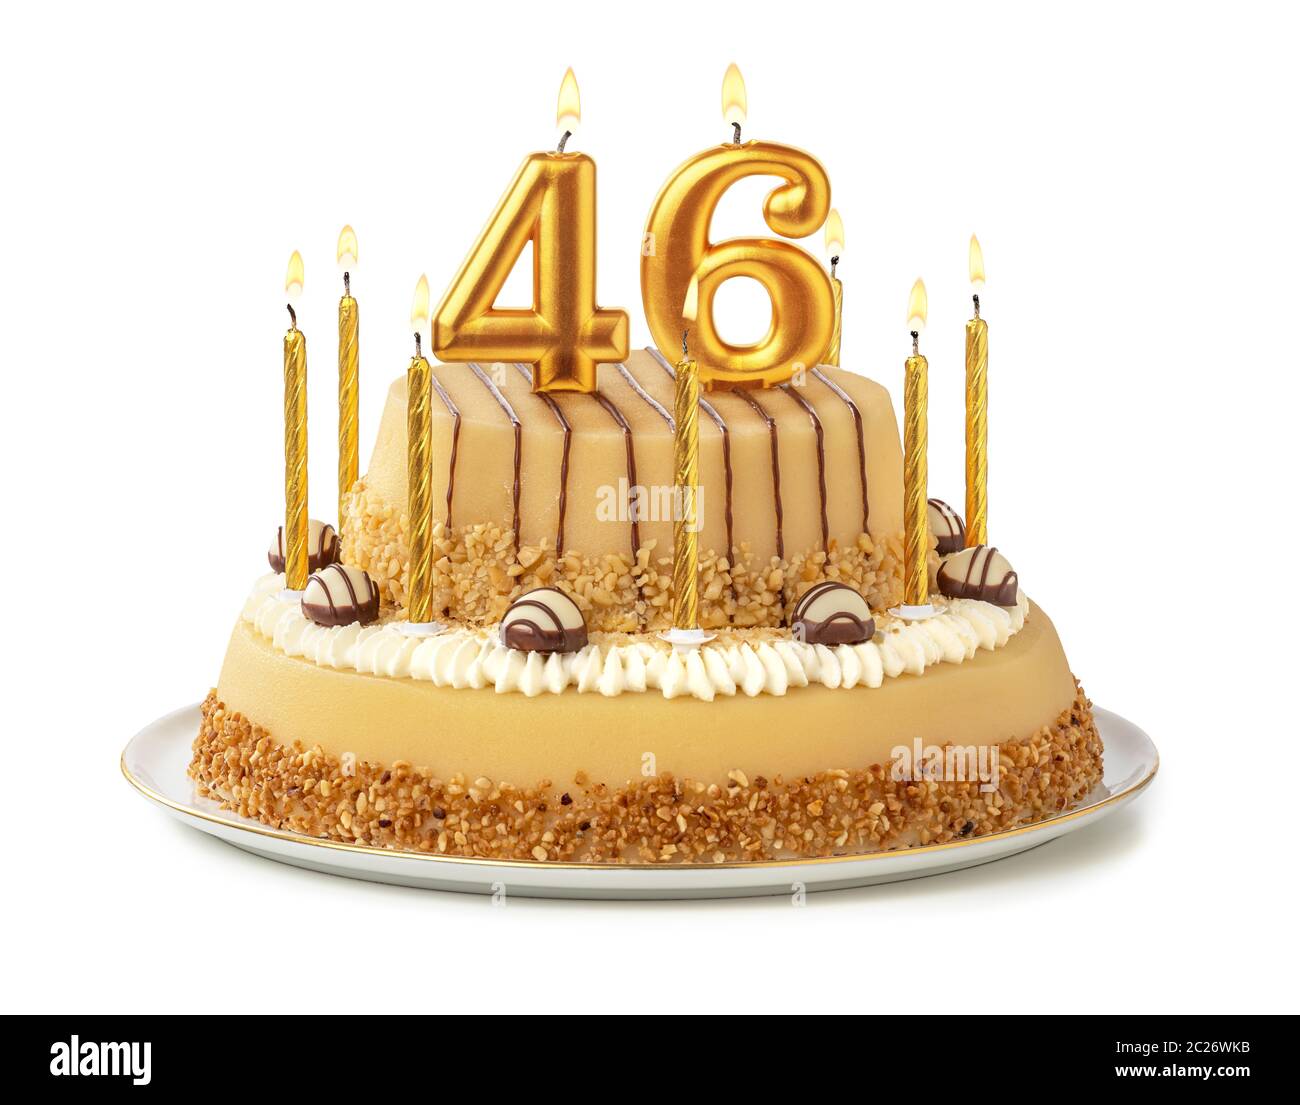 Gâteau de fête avec des bougies d'or - Numéro 46 Photo Stock - Alamy